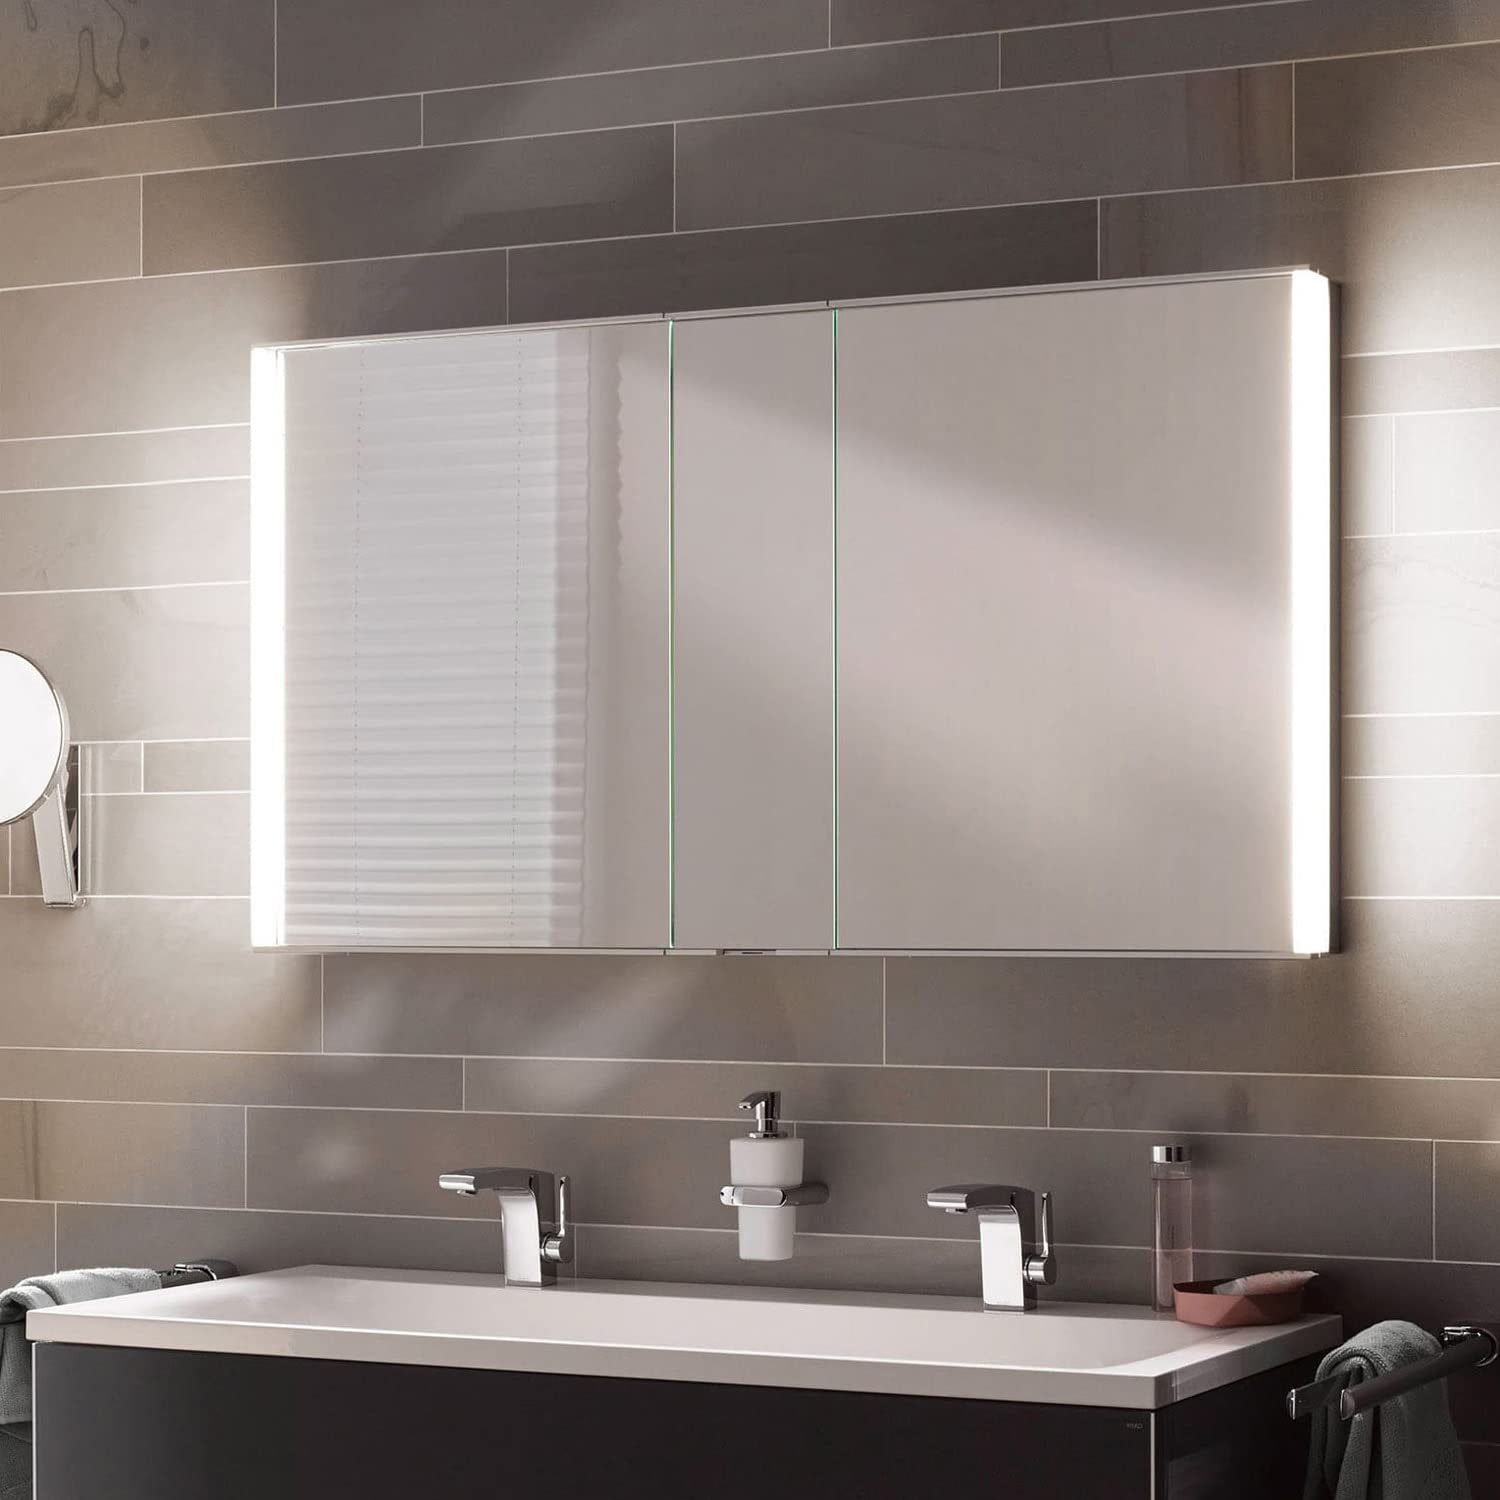 Keuco Spiegelschrank Royal Match (Badezimmerspiegelschrank mit Beleuchtung LED) mit Steckdose, dimmbar, Unterputz-Einbau, 2-türig, 120 cm